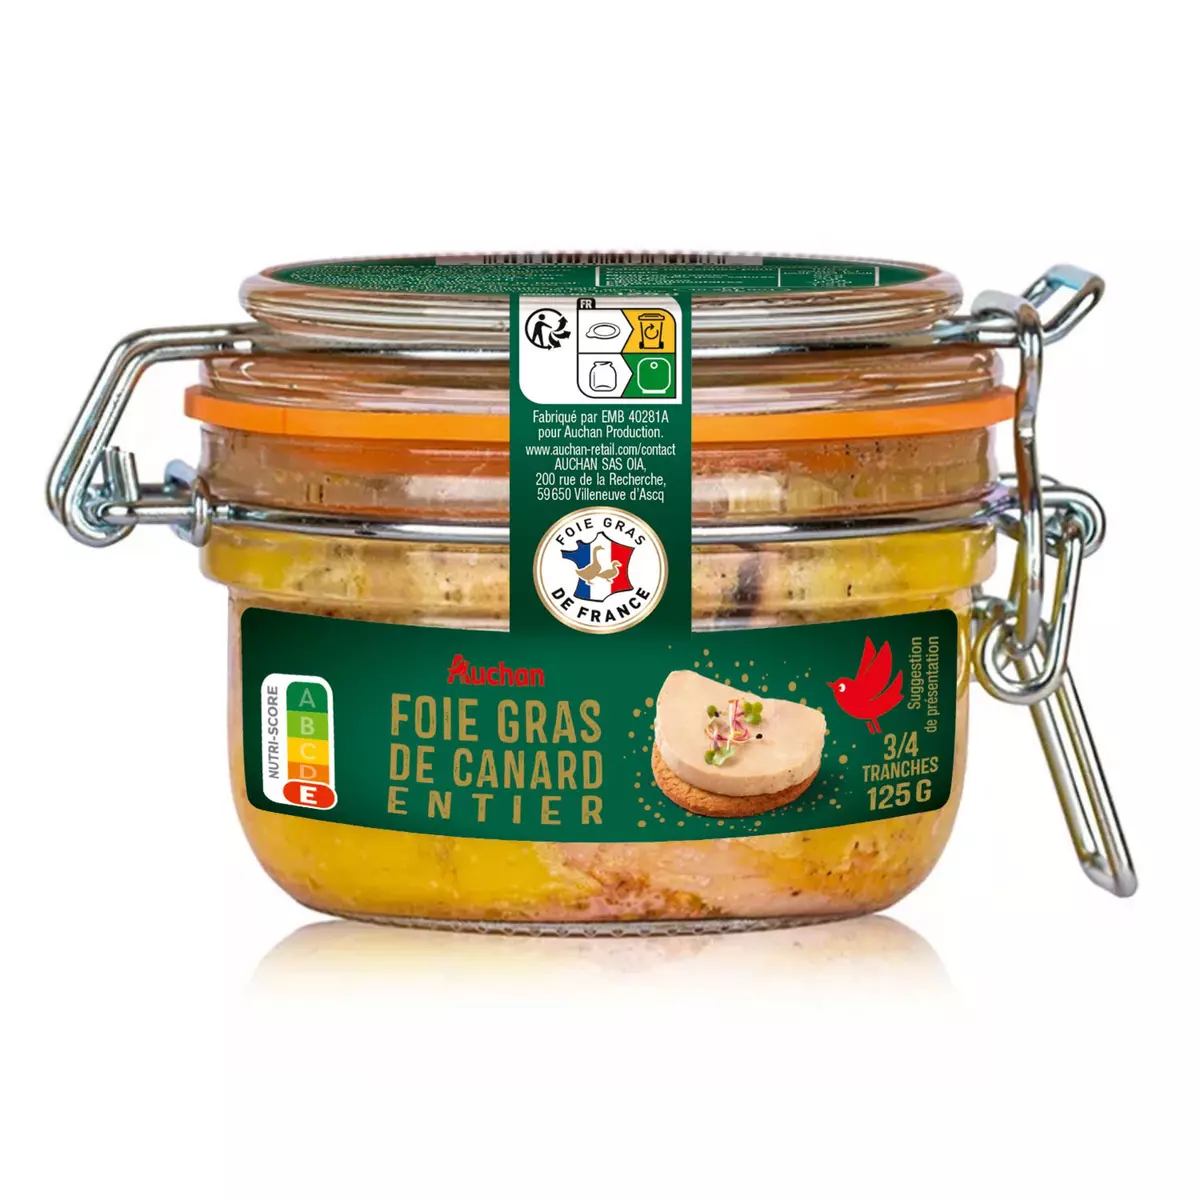 AUCHAN Foie gras de canard entier 3-4 tranches 125g